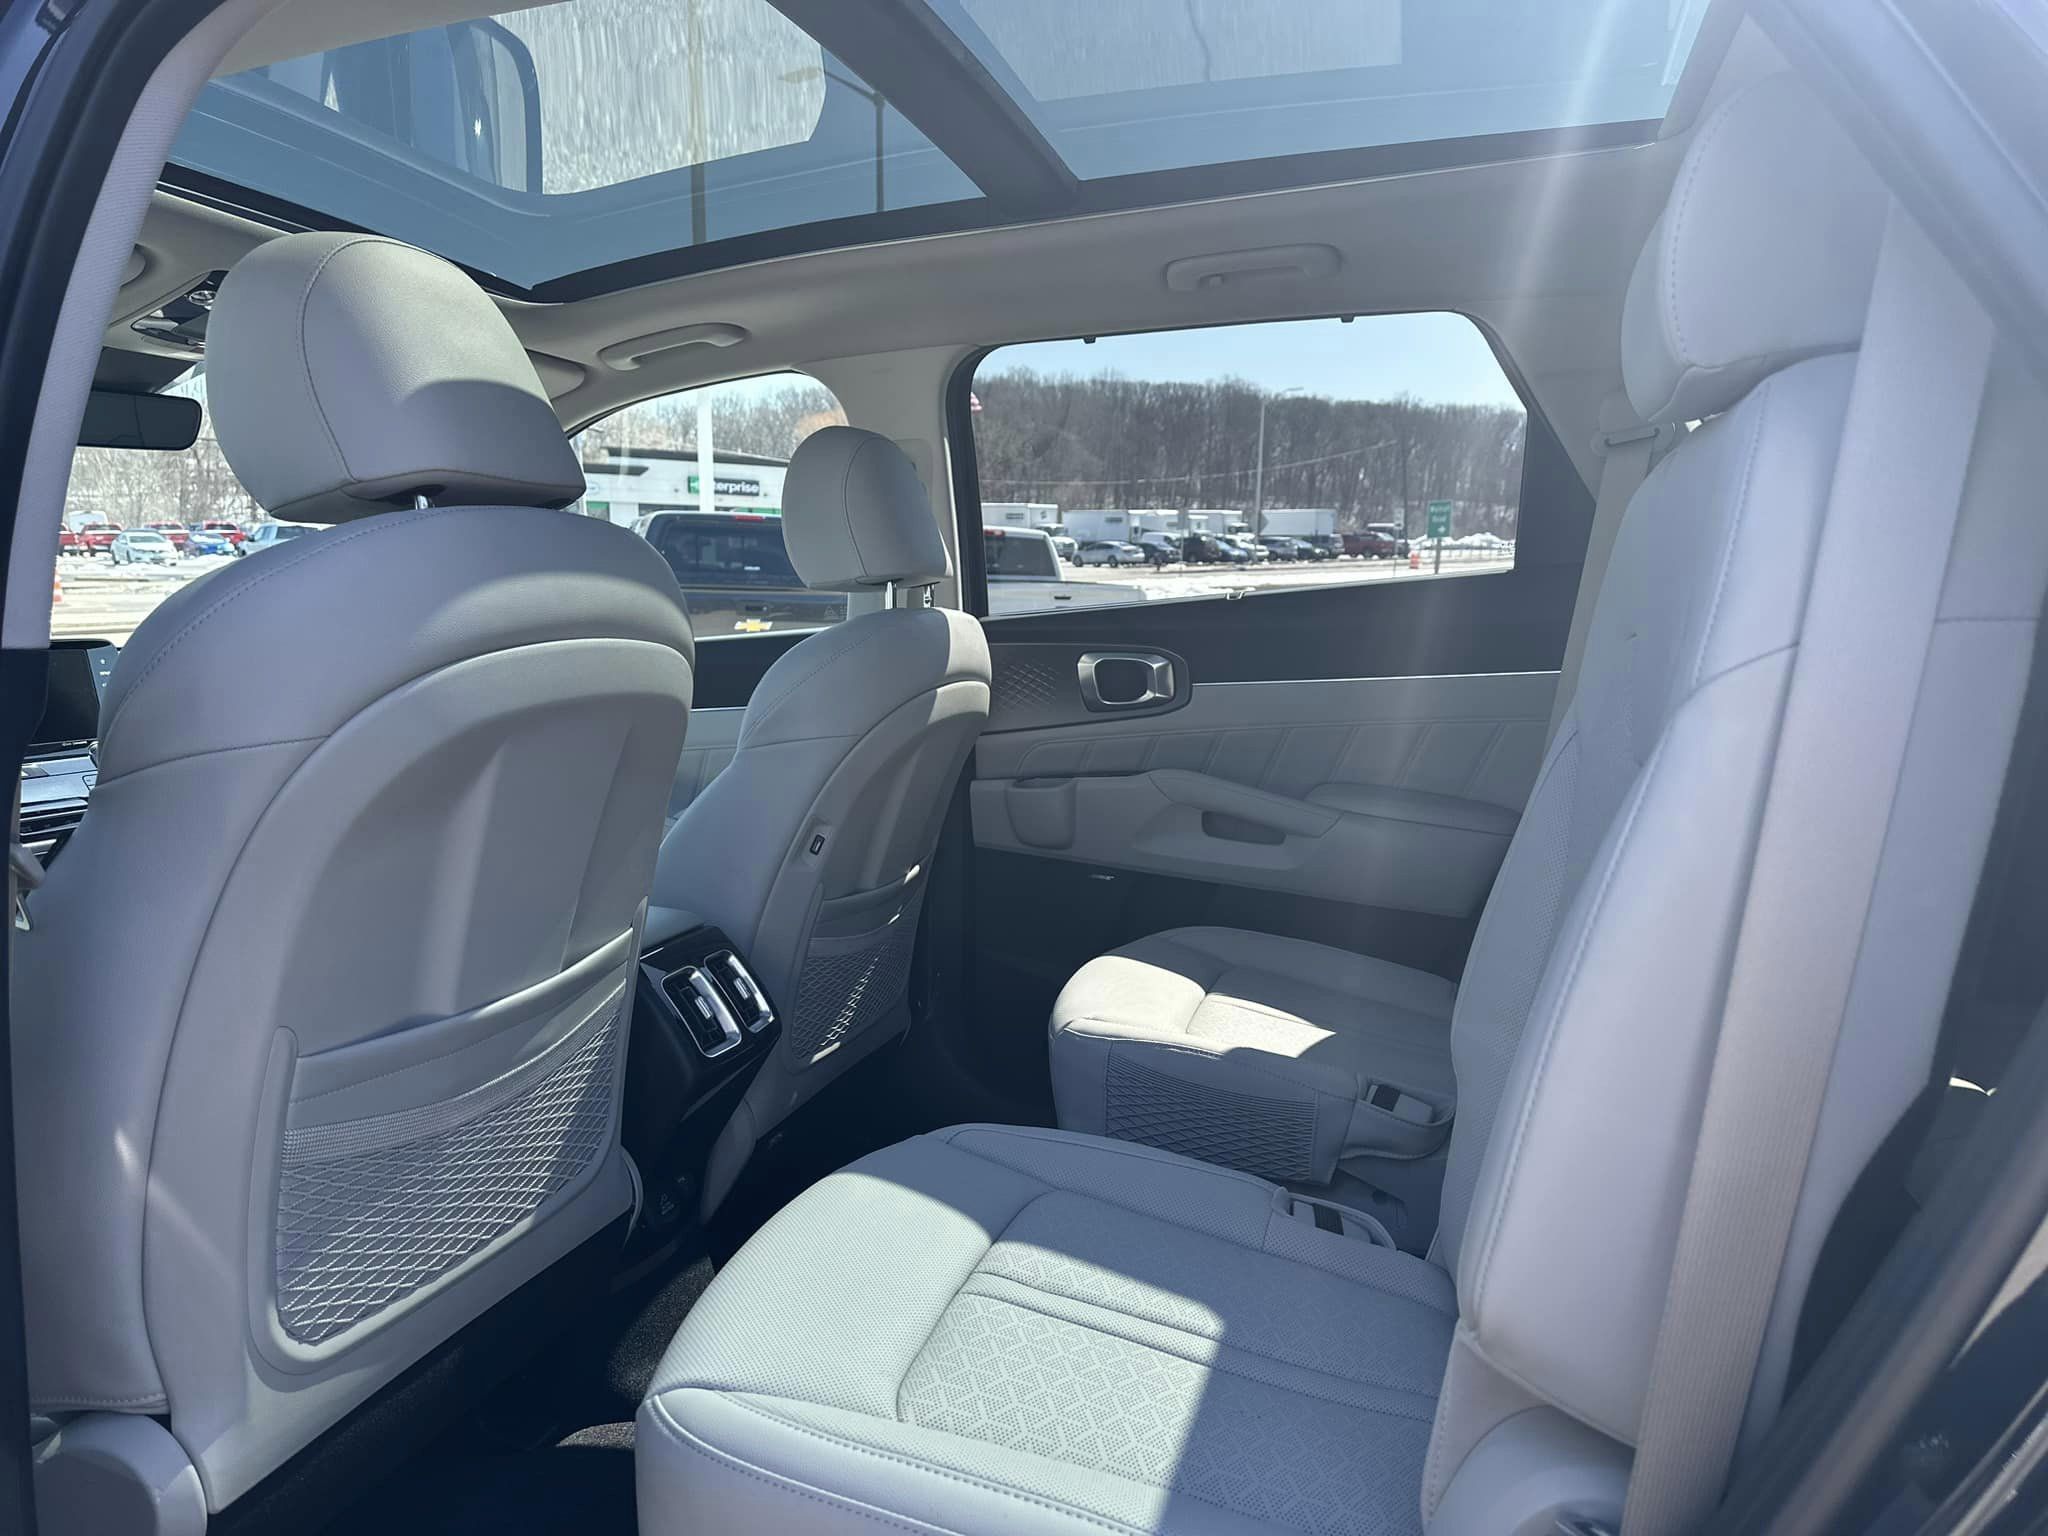 2023 Kia Sportage - Gravity Blue - HEV Hybrid SX Prestige Trim - Second Row View